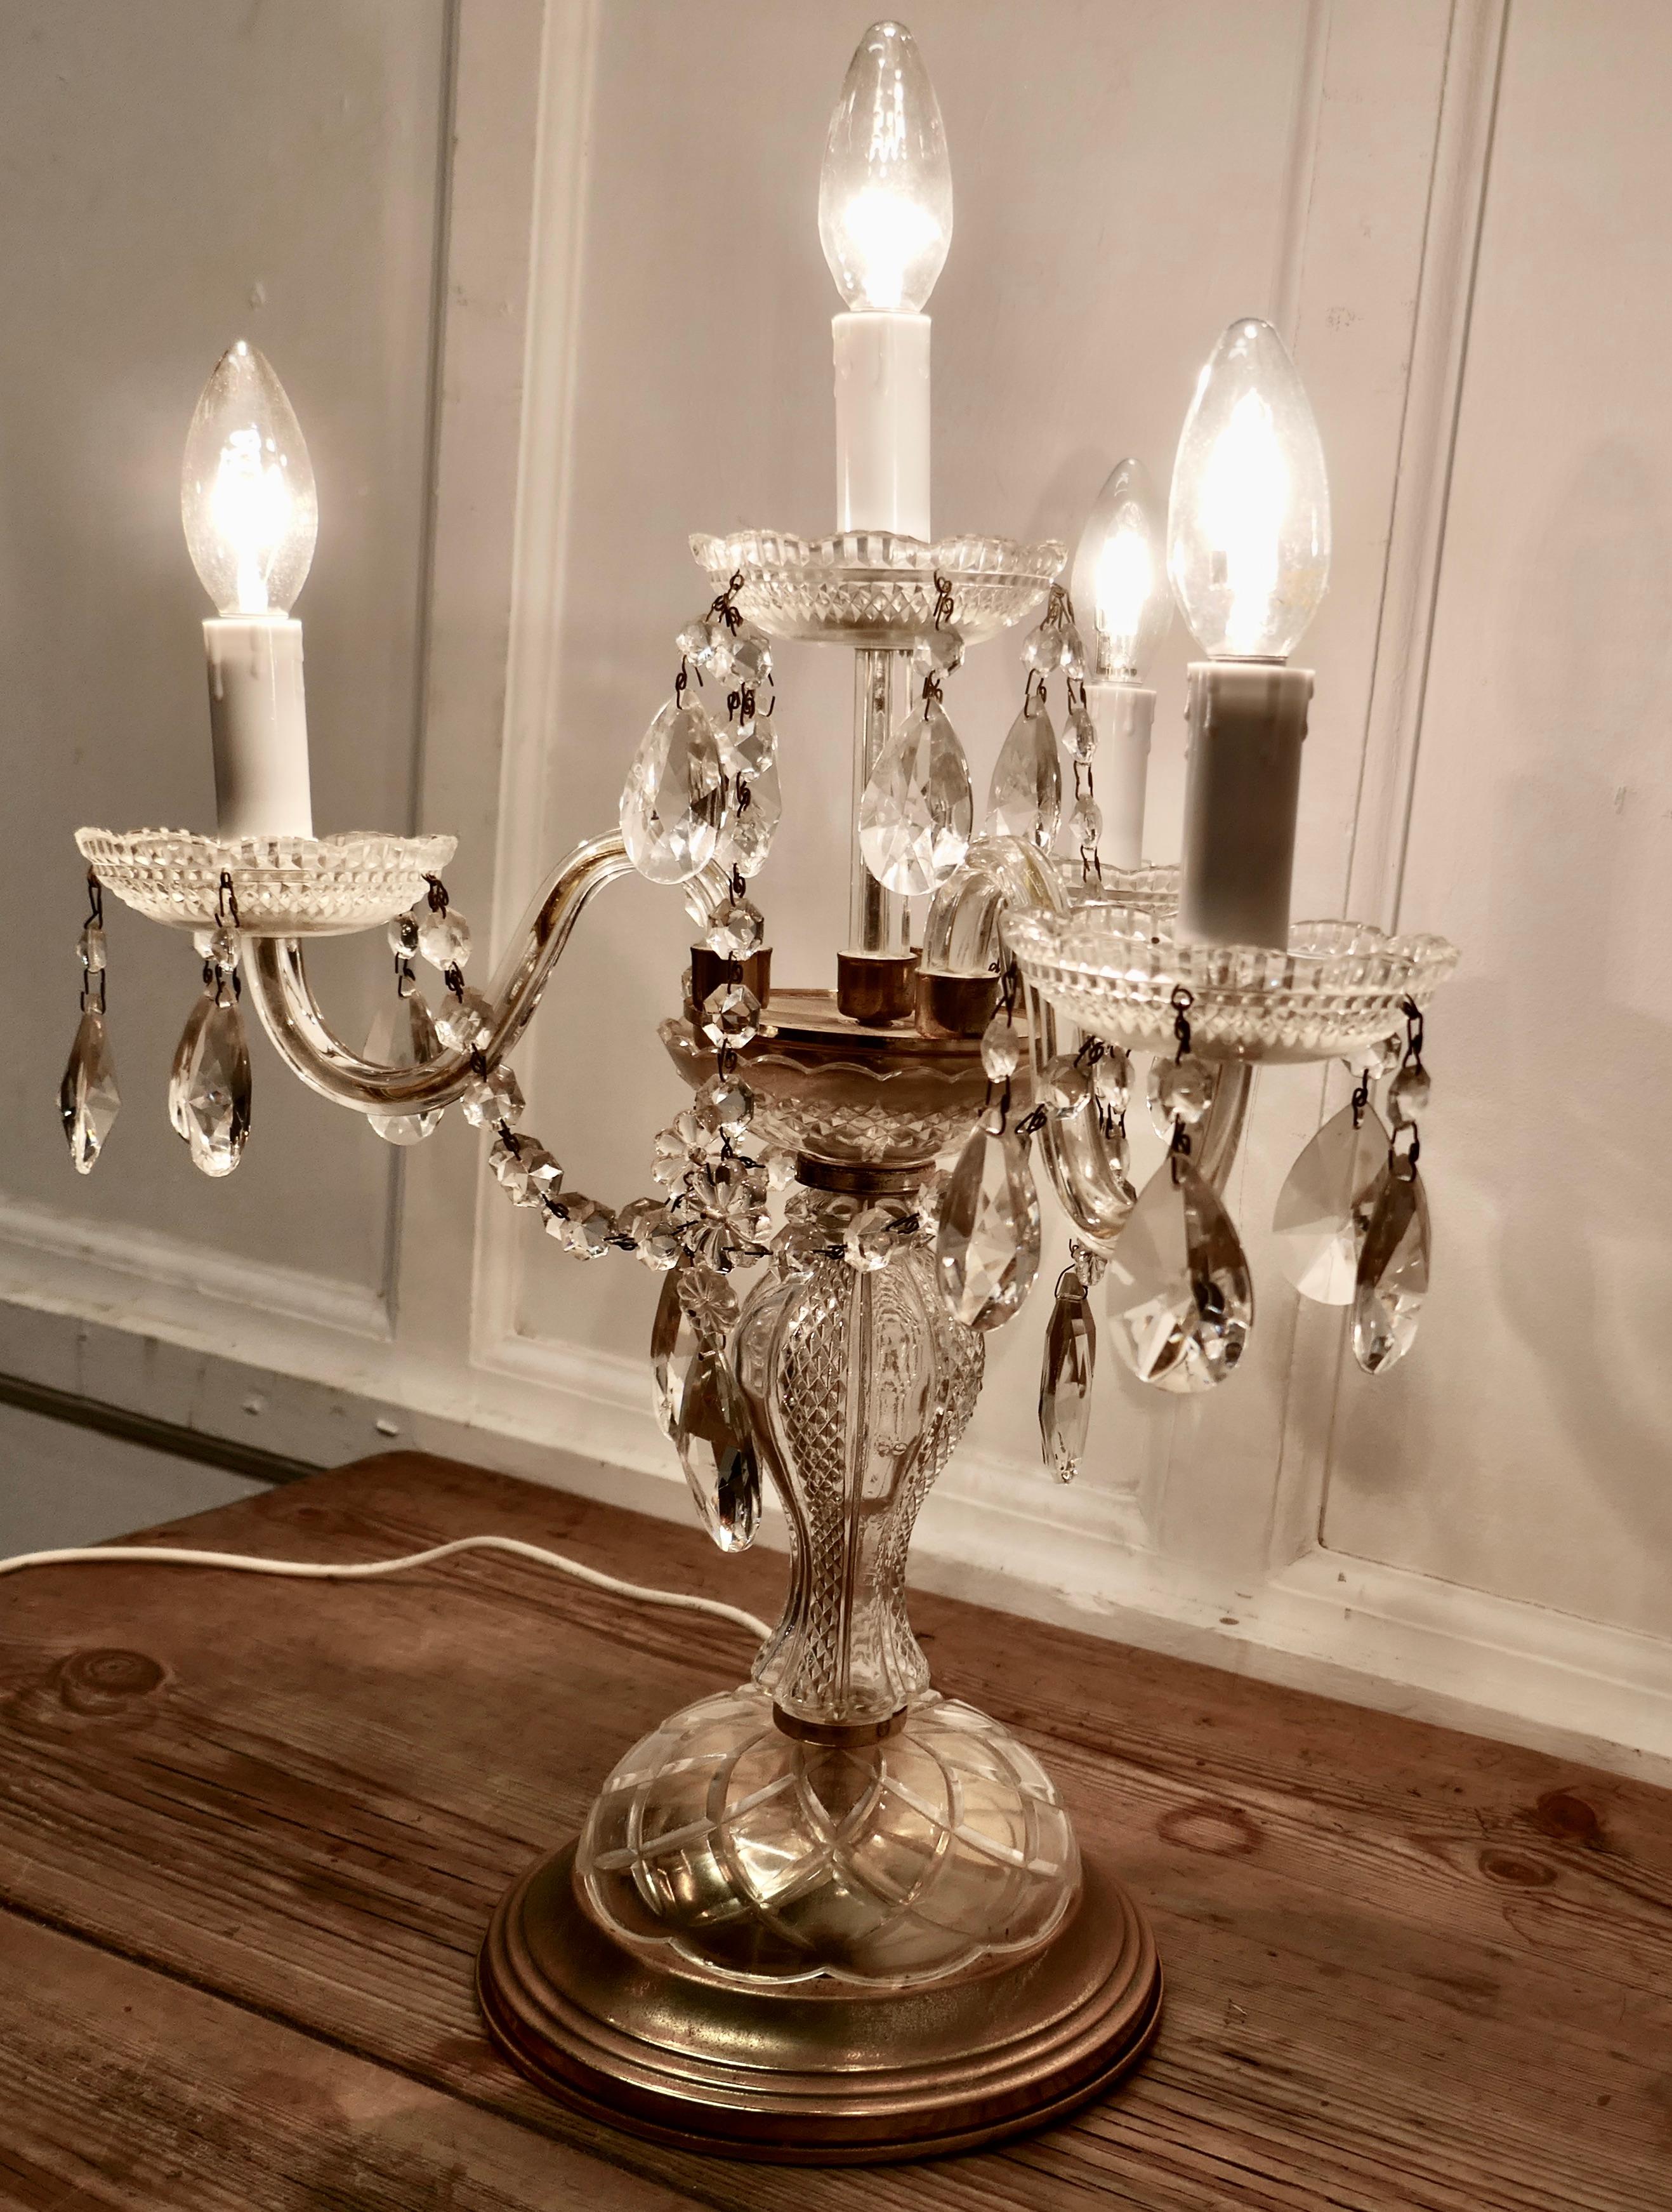 Lampe de table lustre en laiton et cristal français, girandole

C'est une belle pièce, la lampe est éclairée par 3 lampes, elle a une base décorative en laiton avec une colonne centrale verticale en verre supportant un superbe lustre suspendu en